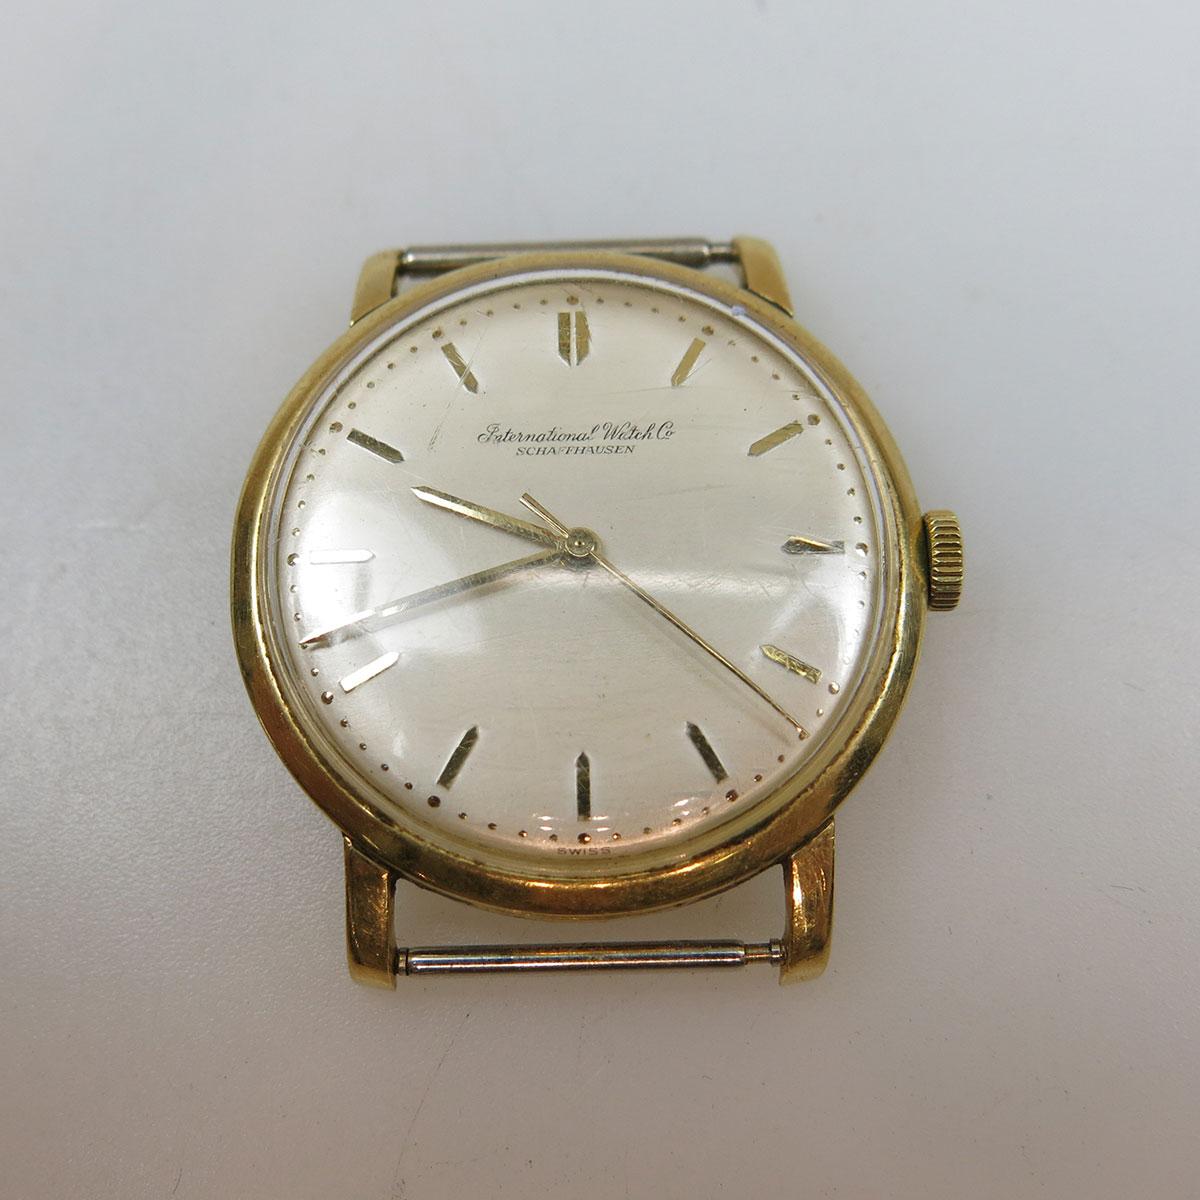 IWC - Schaffhausen Wristwatch